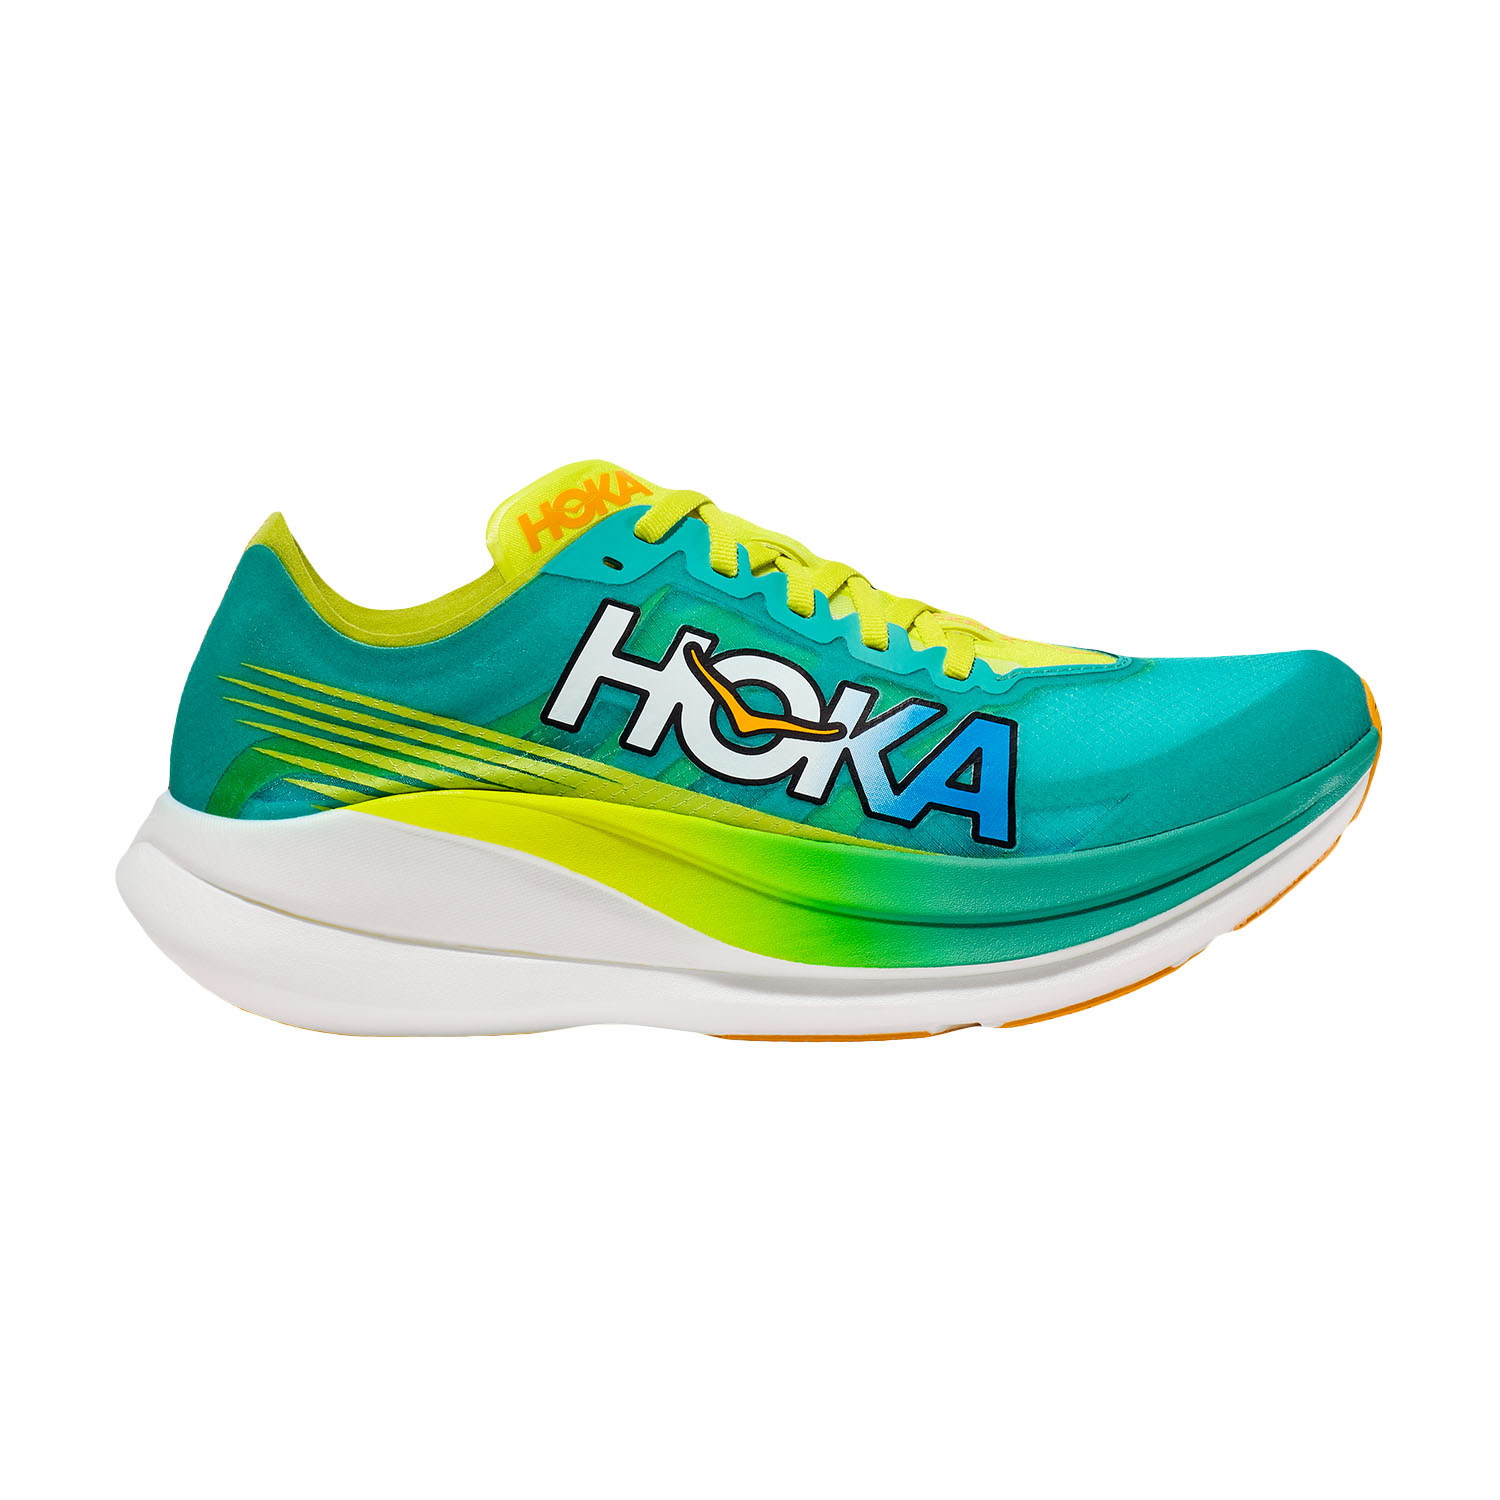 Precios de HOKA ONE ONE ROCKET X 2 baratas ofertas comprar online y outlet en MisterRunning